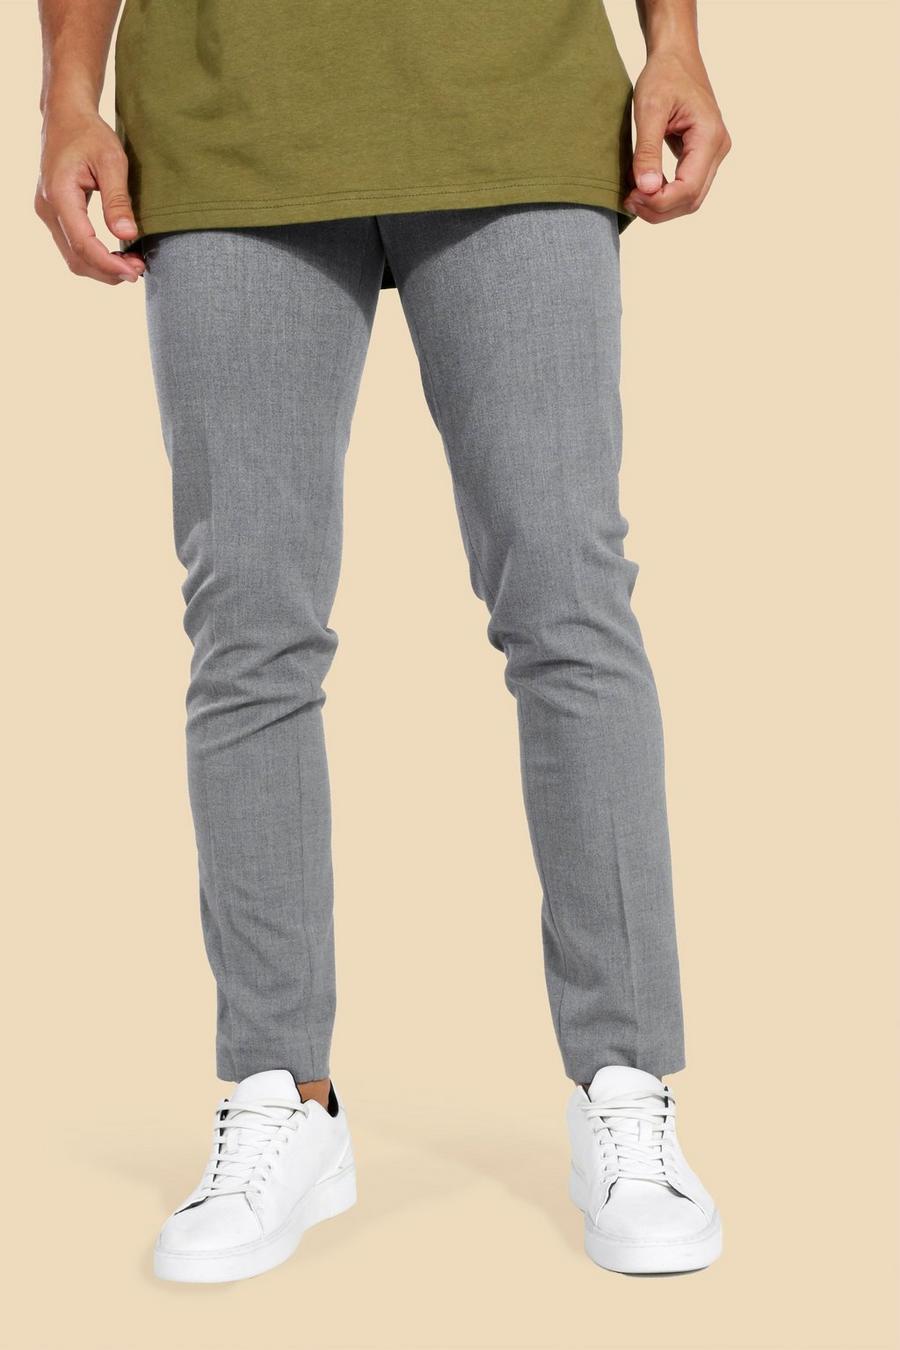 Pantalón entallado pitillo elástico, Grey gris image number 1